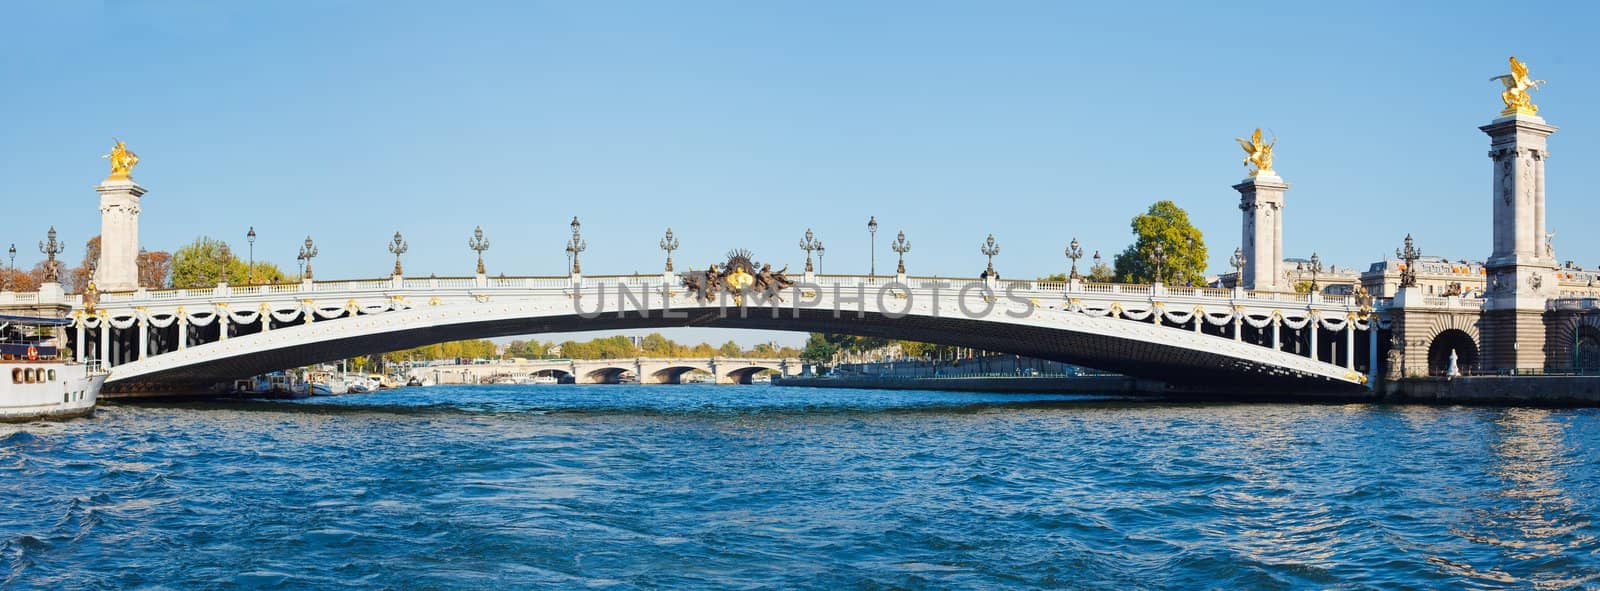 Alexander III Bridge by maxoliki